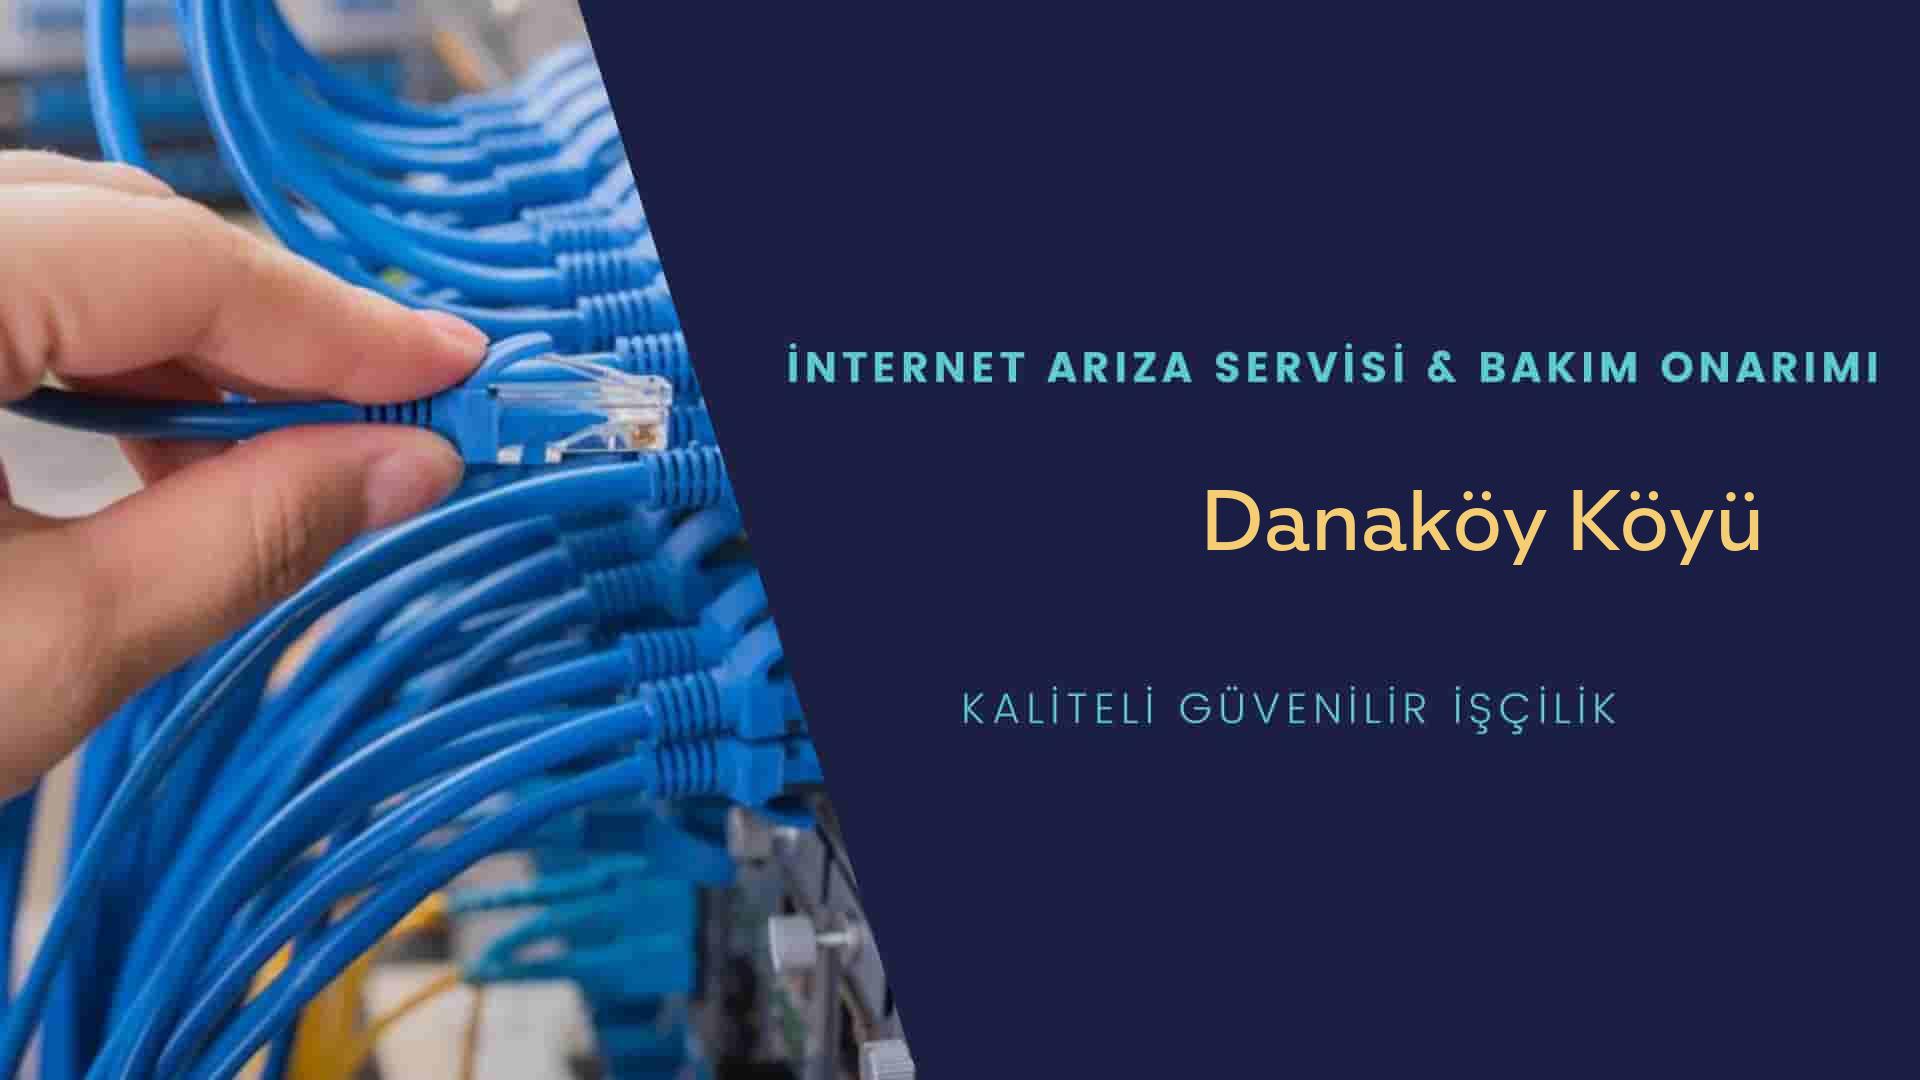 Danaköy Köyü internet kablosu çekimi yapan yerler veya elektrikçiler mi? arıyorsunuz doğru yerdesiniz o zaman sizlere 7/24 yardımcı olacak profesyonel ustalarımız bir telefon kadar yakındır size.